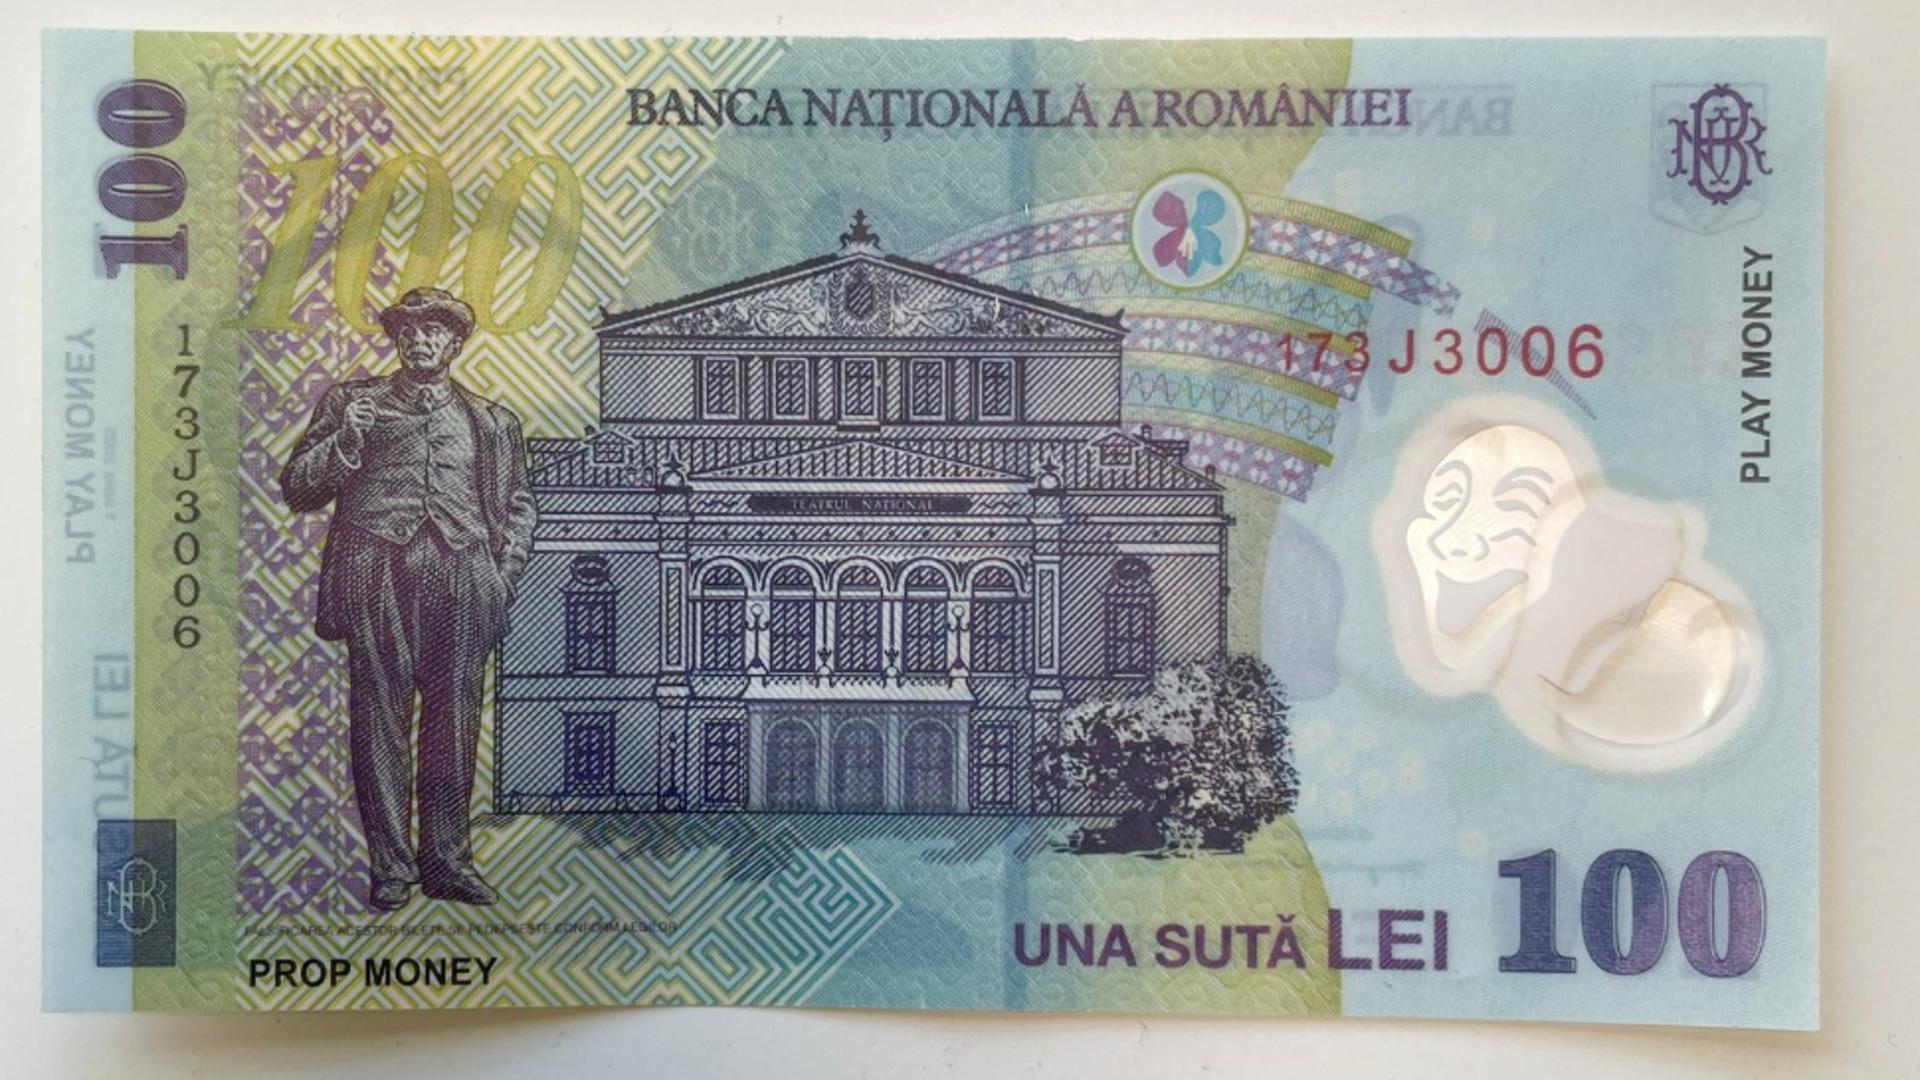 Bancnotele false primite de curierul păgubit. Sursa foto: Curiera Transport Solutions